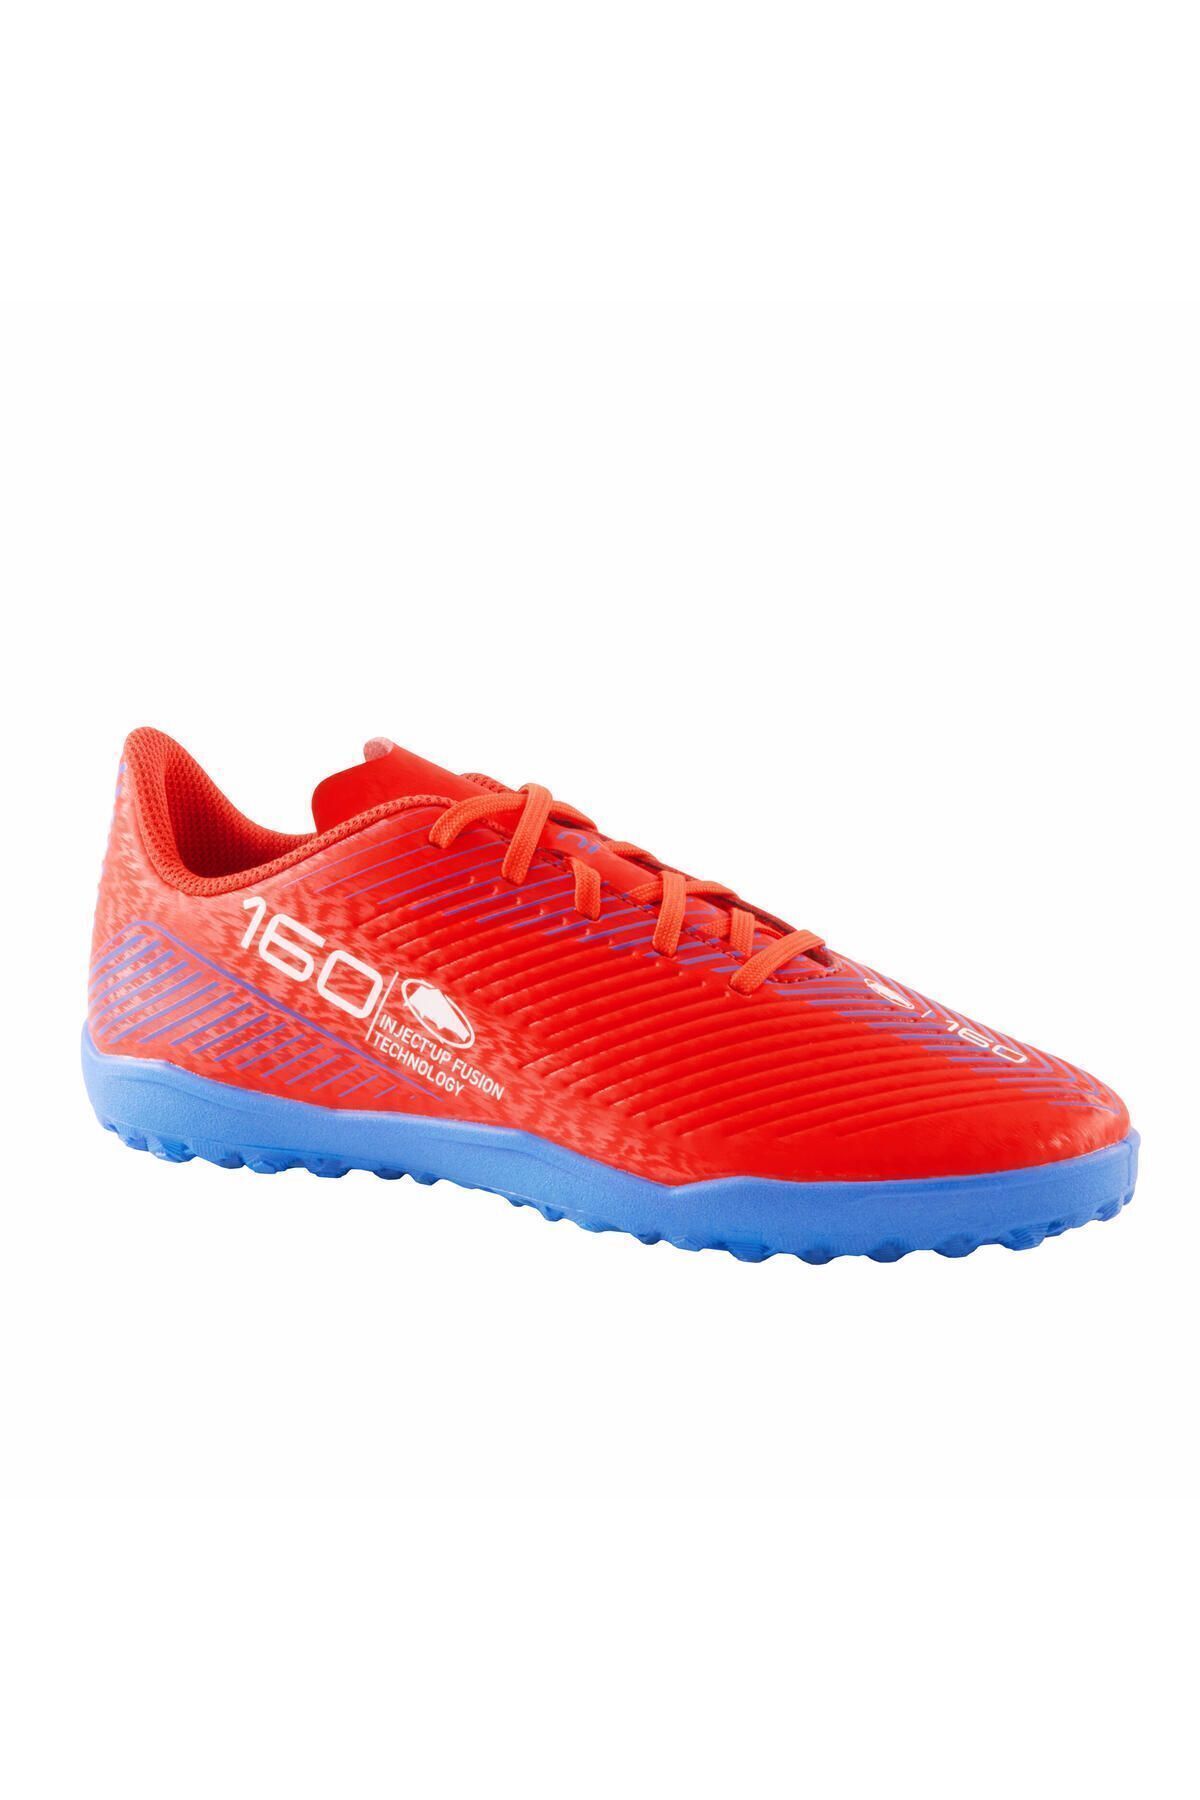 Decathlon Çocuk Krampon / Futbol Ayakkabısı - Kırmızı - 160 Turf